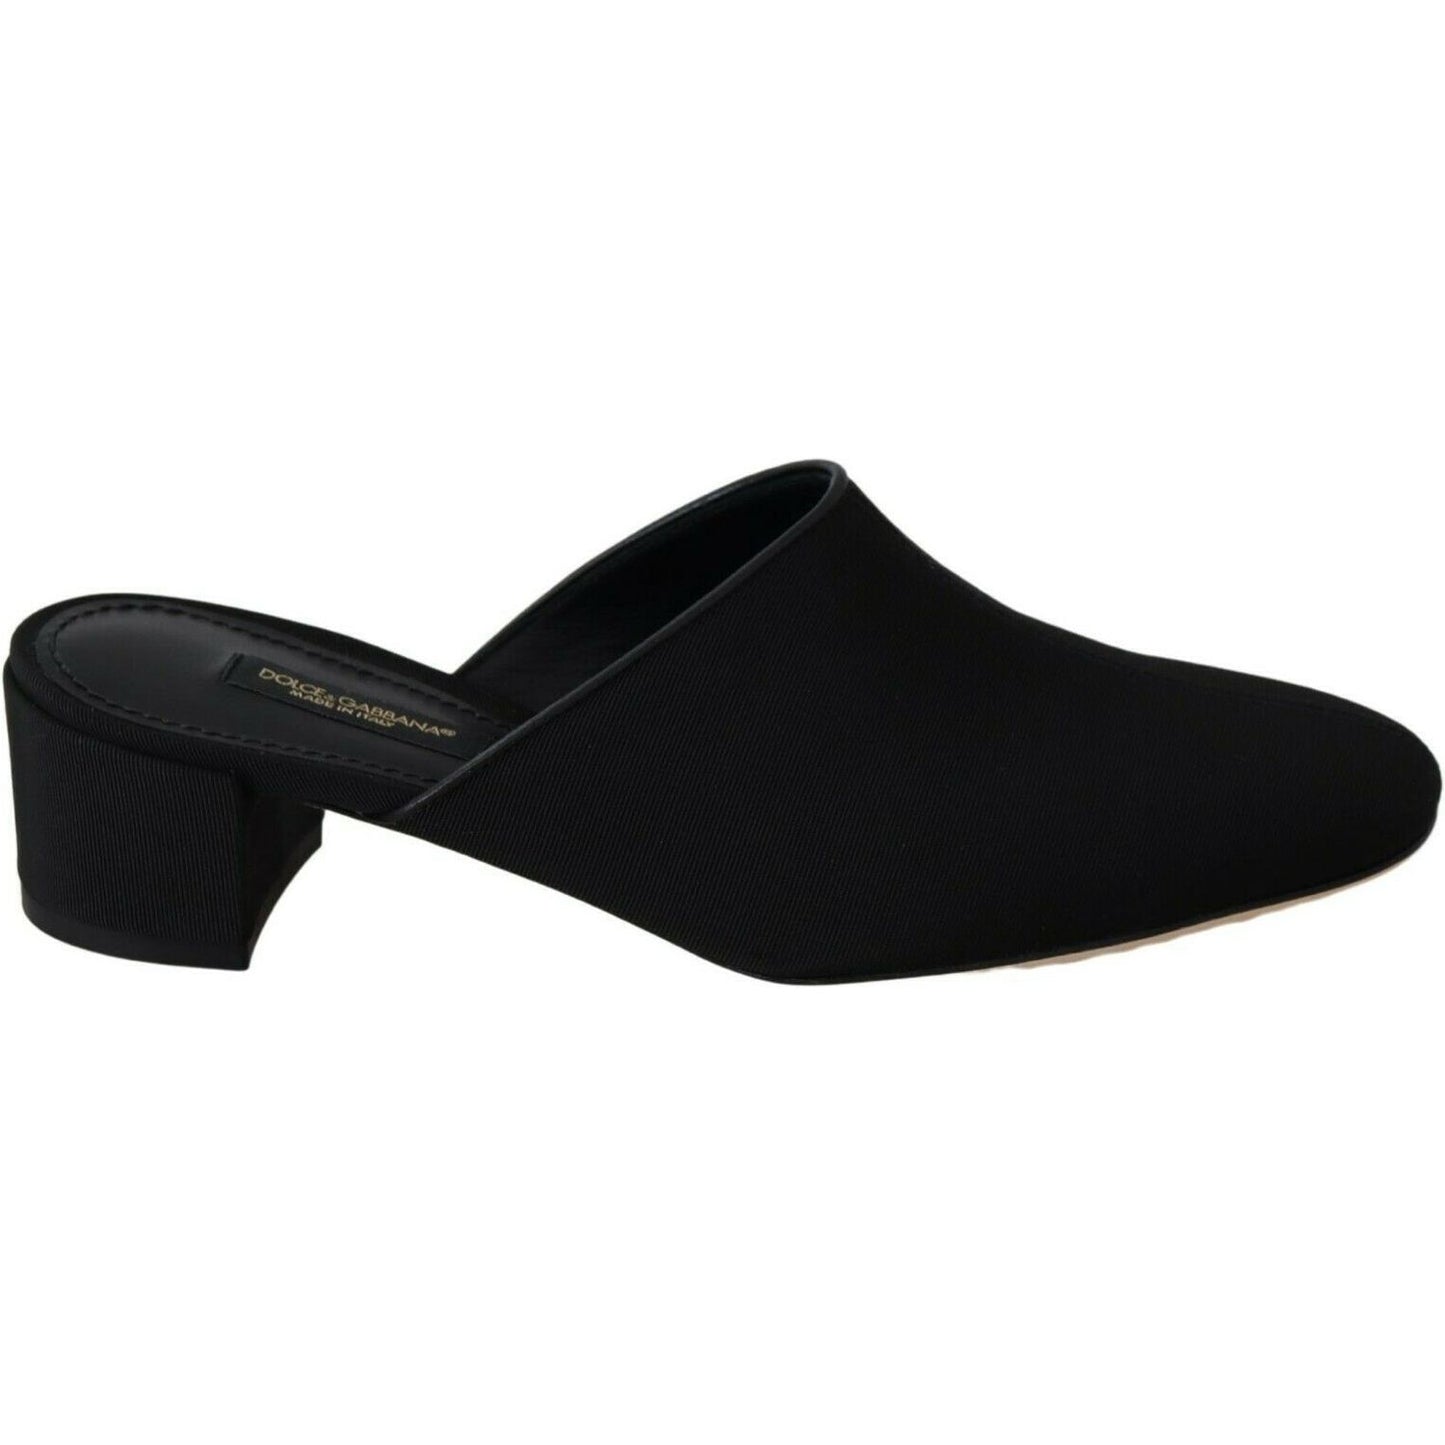 Dolce & Gabbana Chic Black Grosgrain Slide Sandals black-grosgrain-slides-sandals-women-shoes WOMAN SANDALS s-l1600-2022-09-05T164602.242-d68ed6b0-d7b.jpg